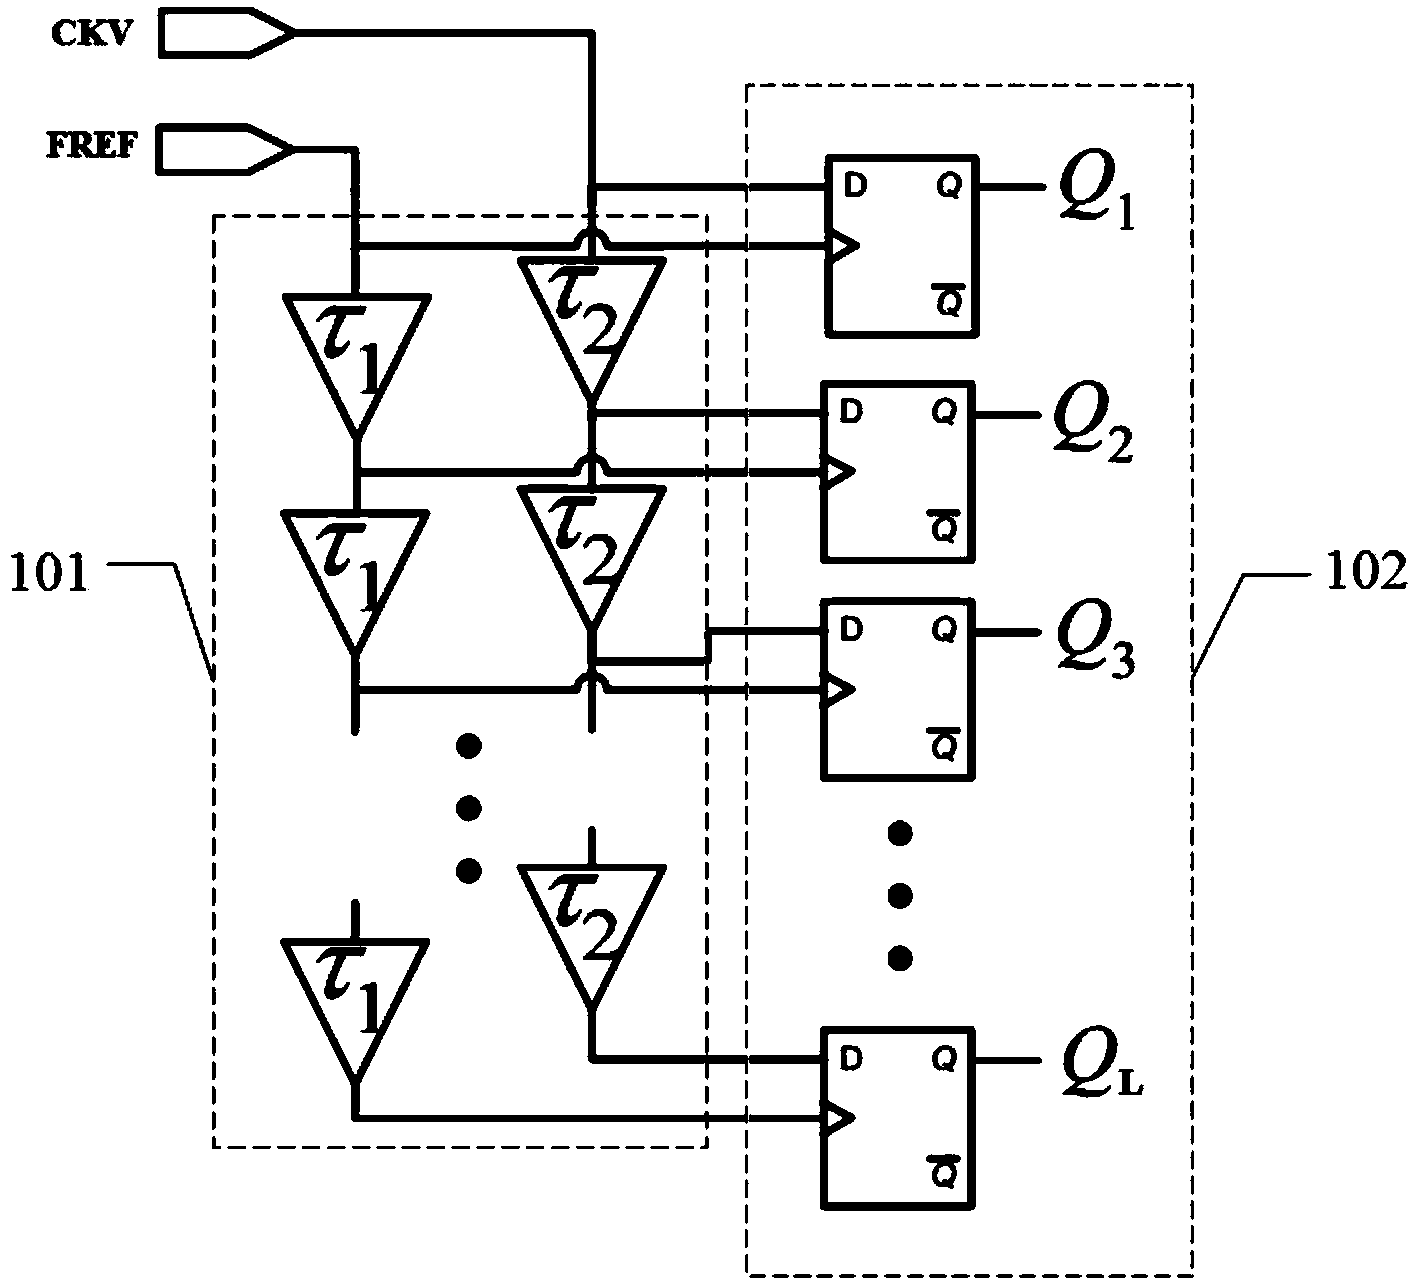 Time-digital converter, full-digital phase-locked loop circuit and method